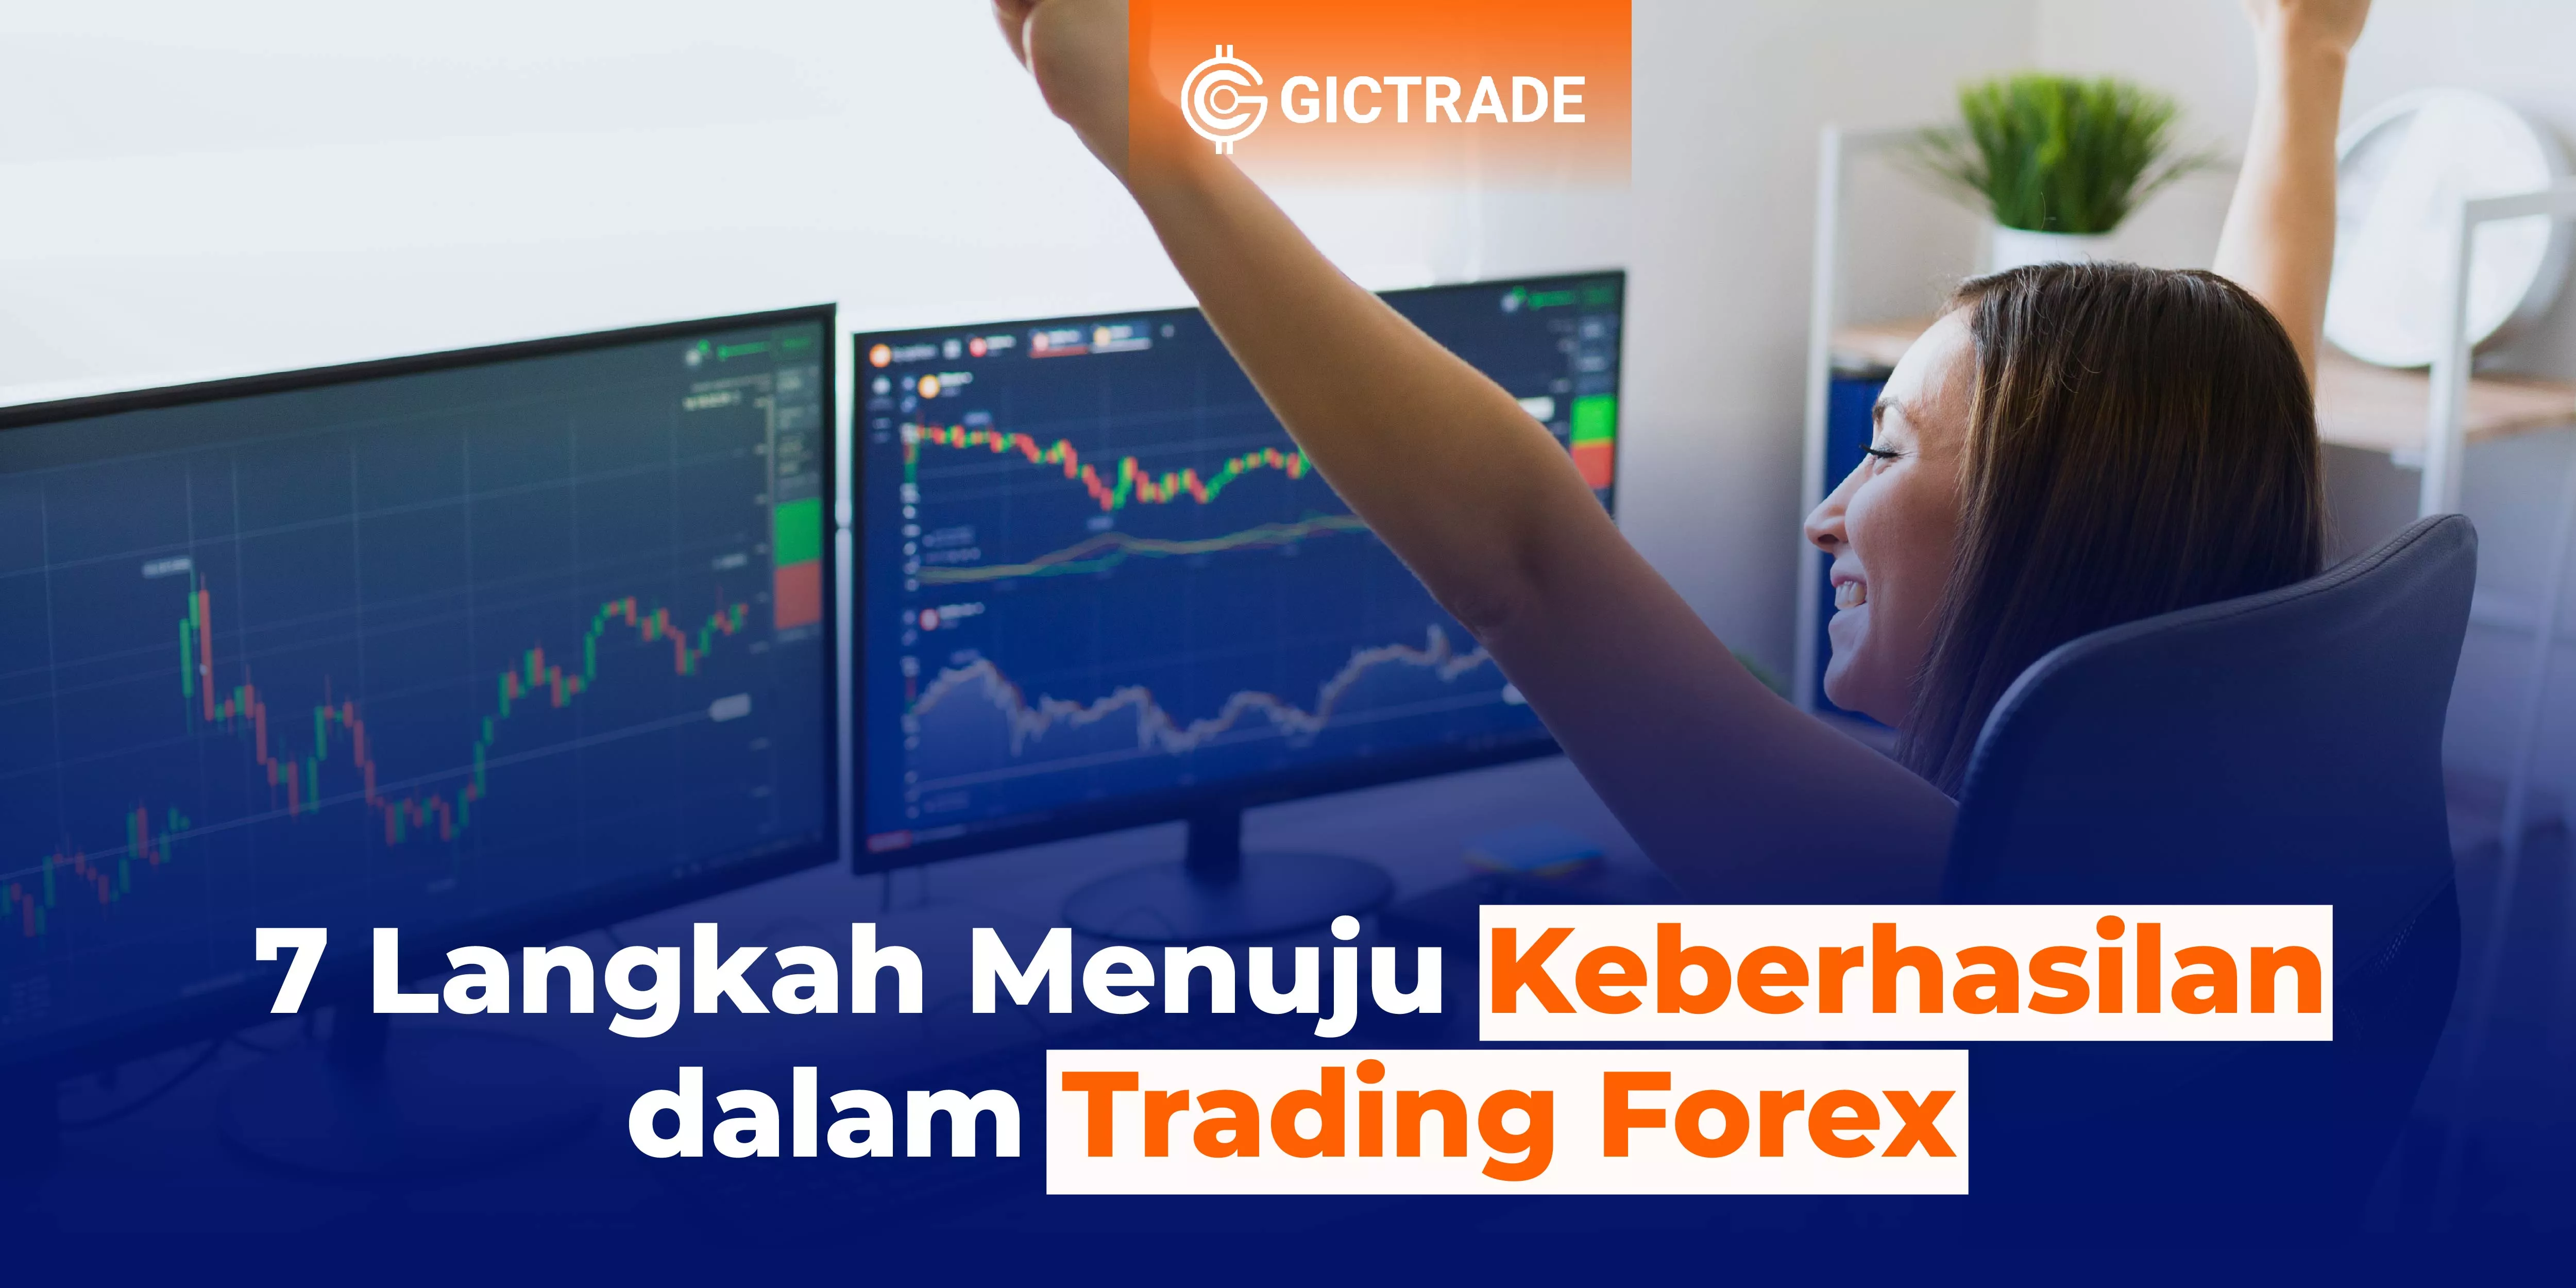 Keberhasilan dalam Trading Forex